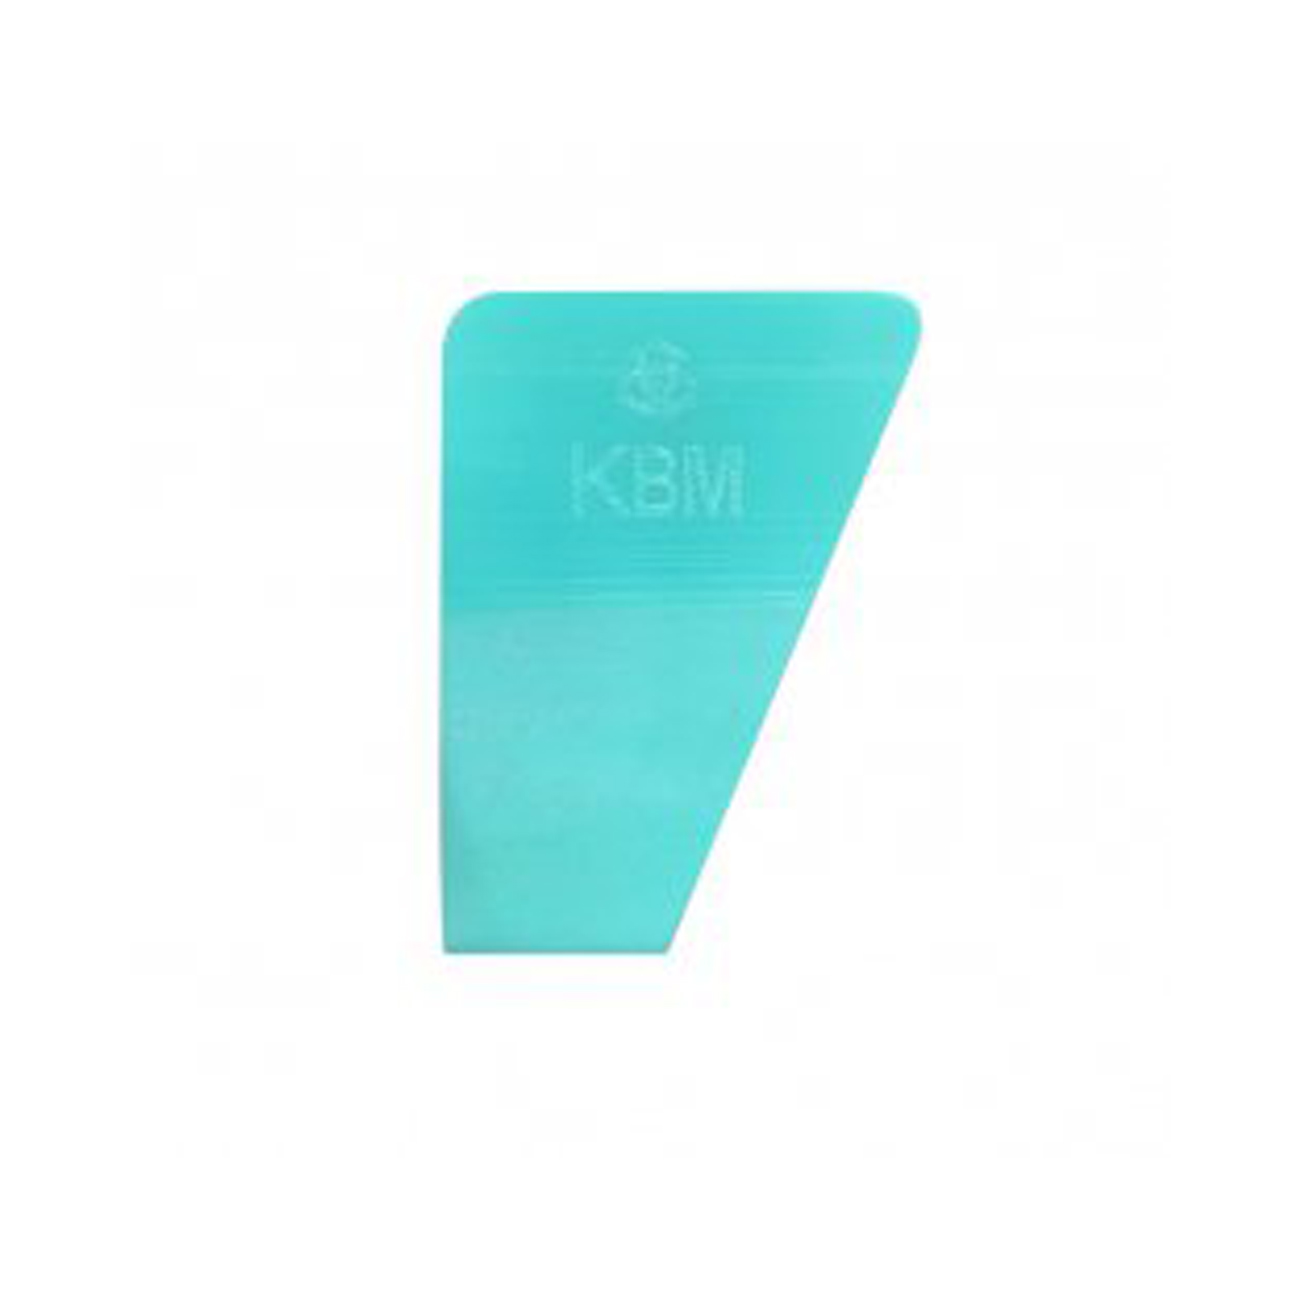 Выгонка KVM 7 полиуретановая мятная 5,5 x 7,5 см